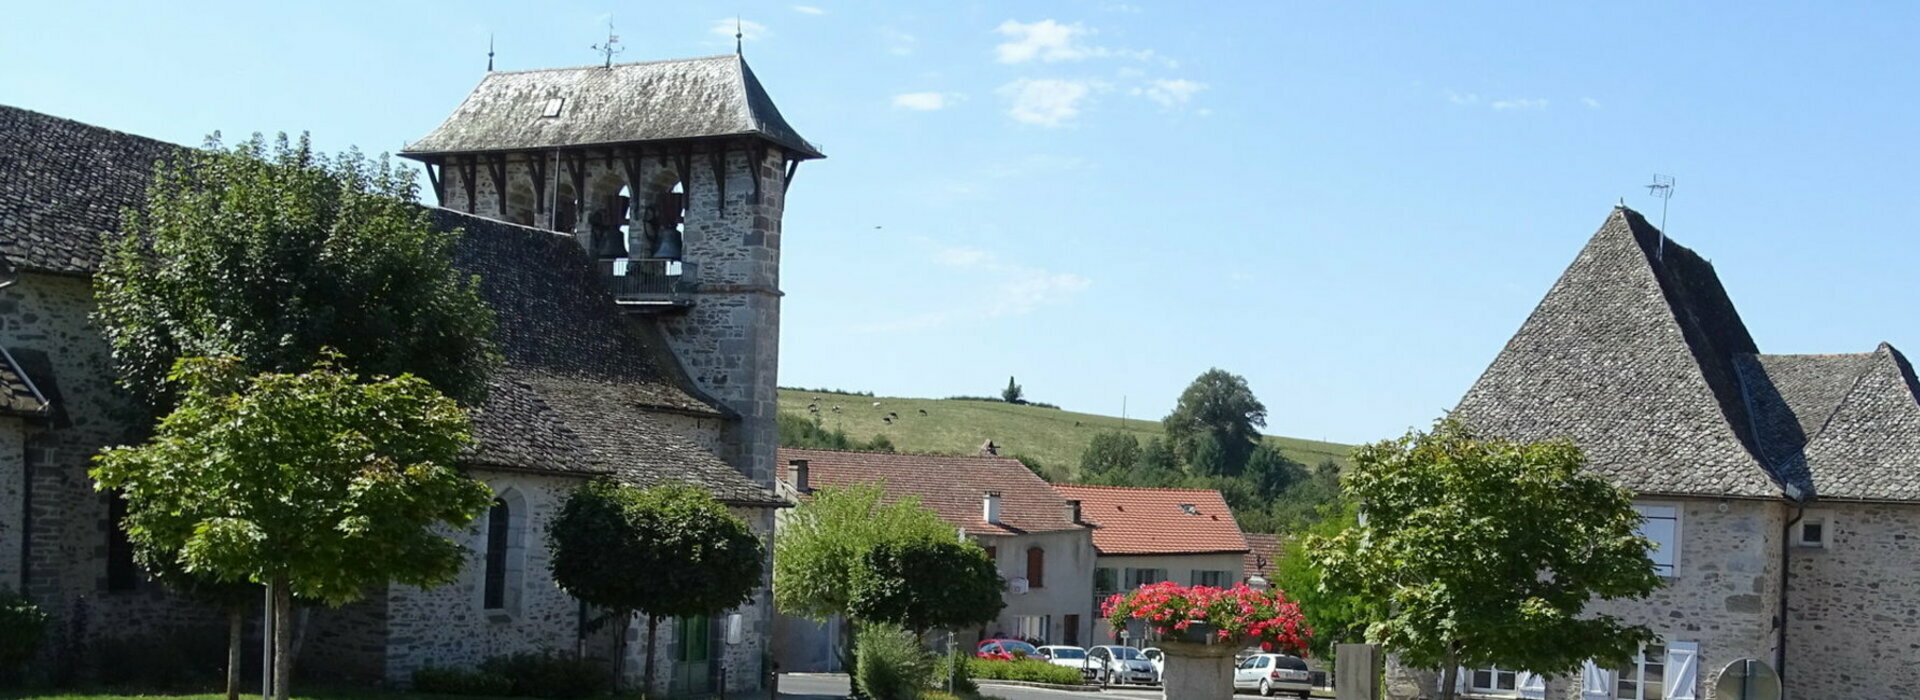 Commune de Roannes Saint Mary